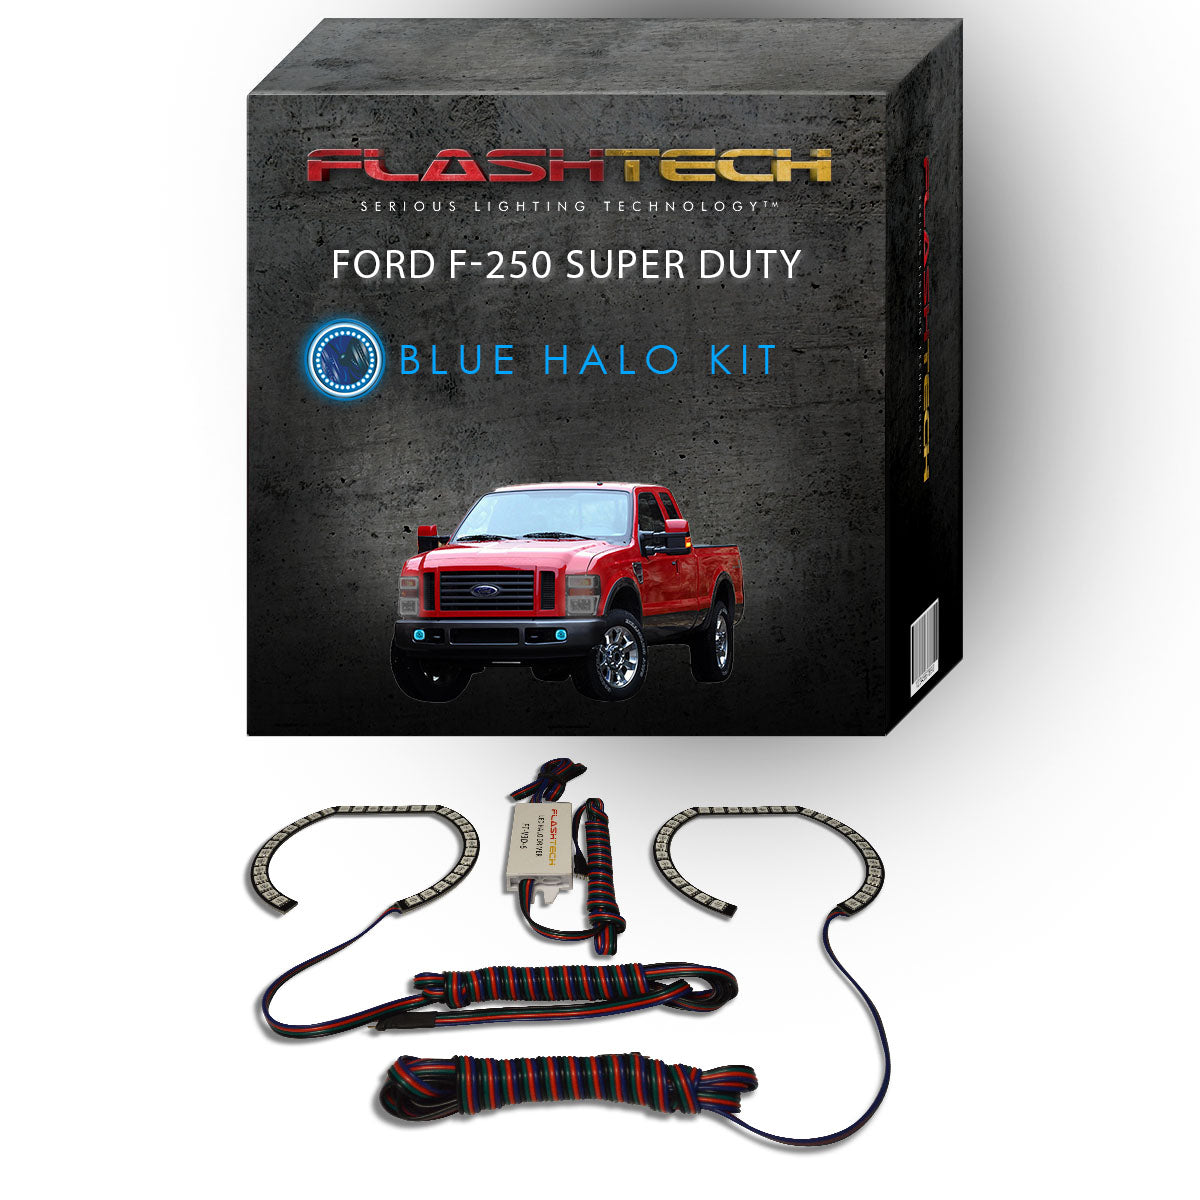 Ford-F-250 Super Duty-2008, 2009, 2010-LED-Halo-Fog Lights-RGB-No Remote-FO-F20810-V3F